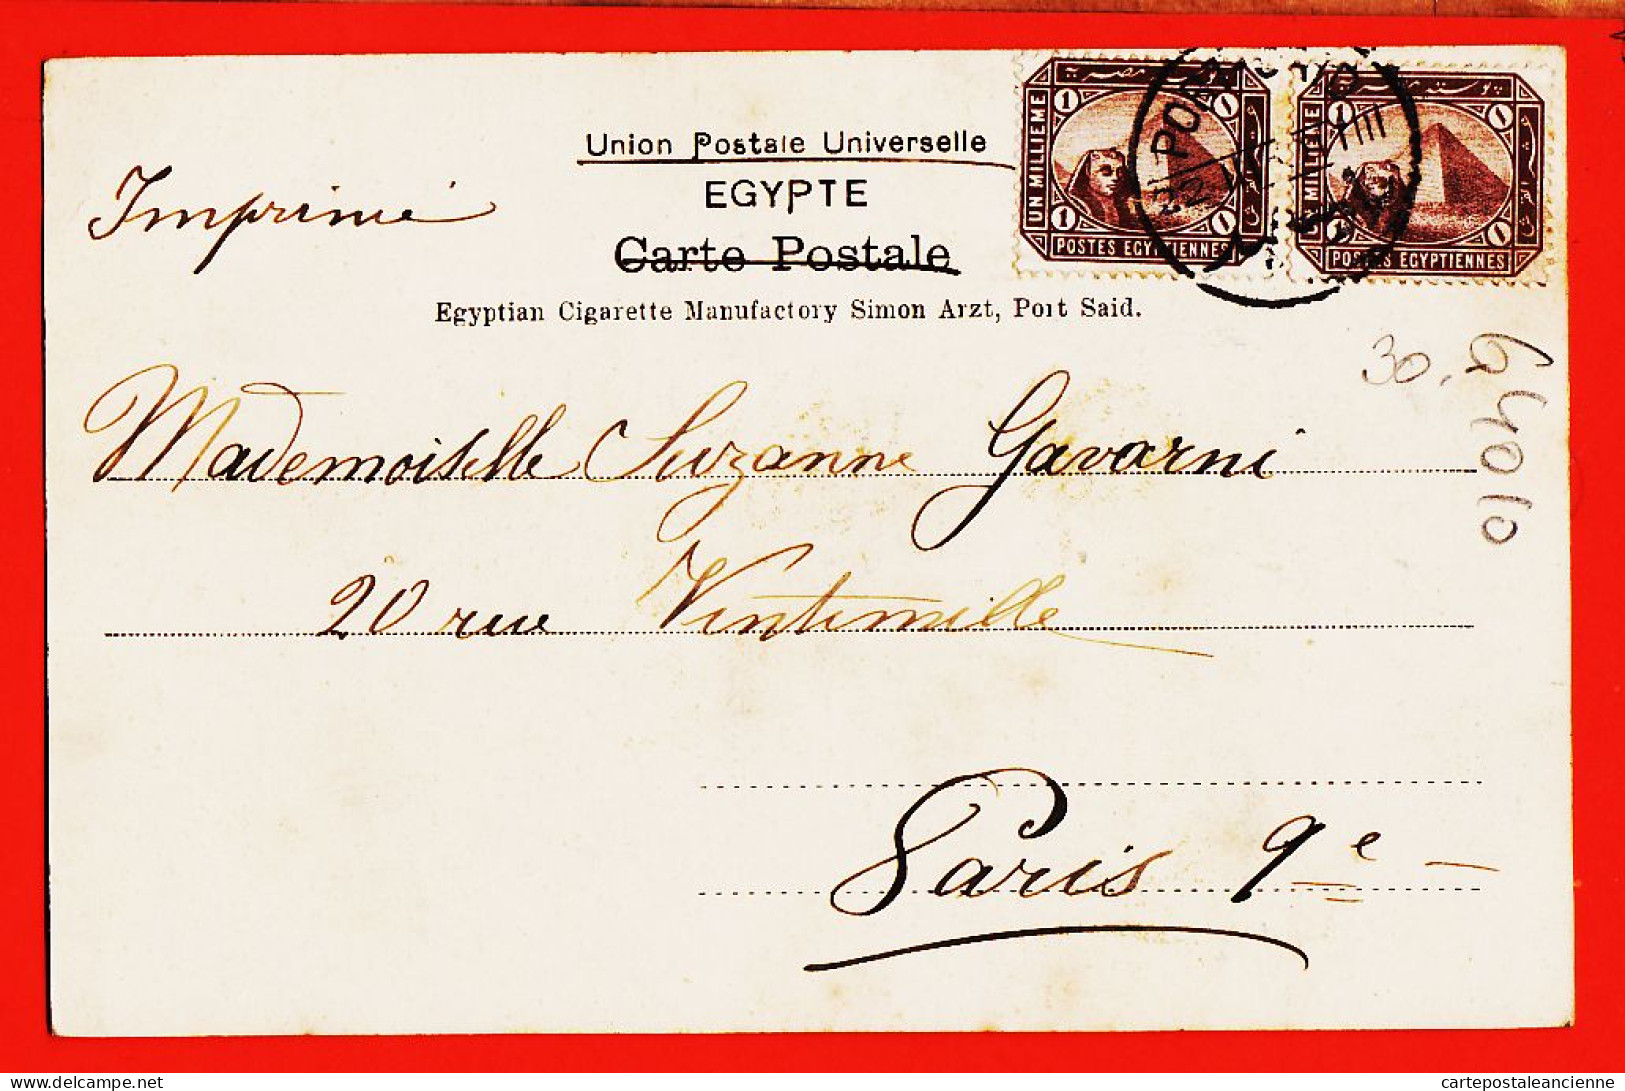 27228 / ⭐ PORT-SAID Egypte Vue Port Felouques 1902 De Jane PERRIN à Suzanne GAVARNI 20 Rue Vintimille Paris IX - Port-Saïd